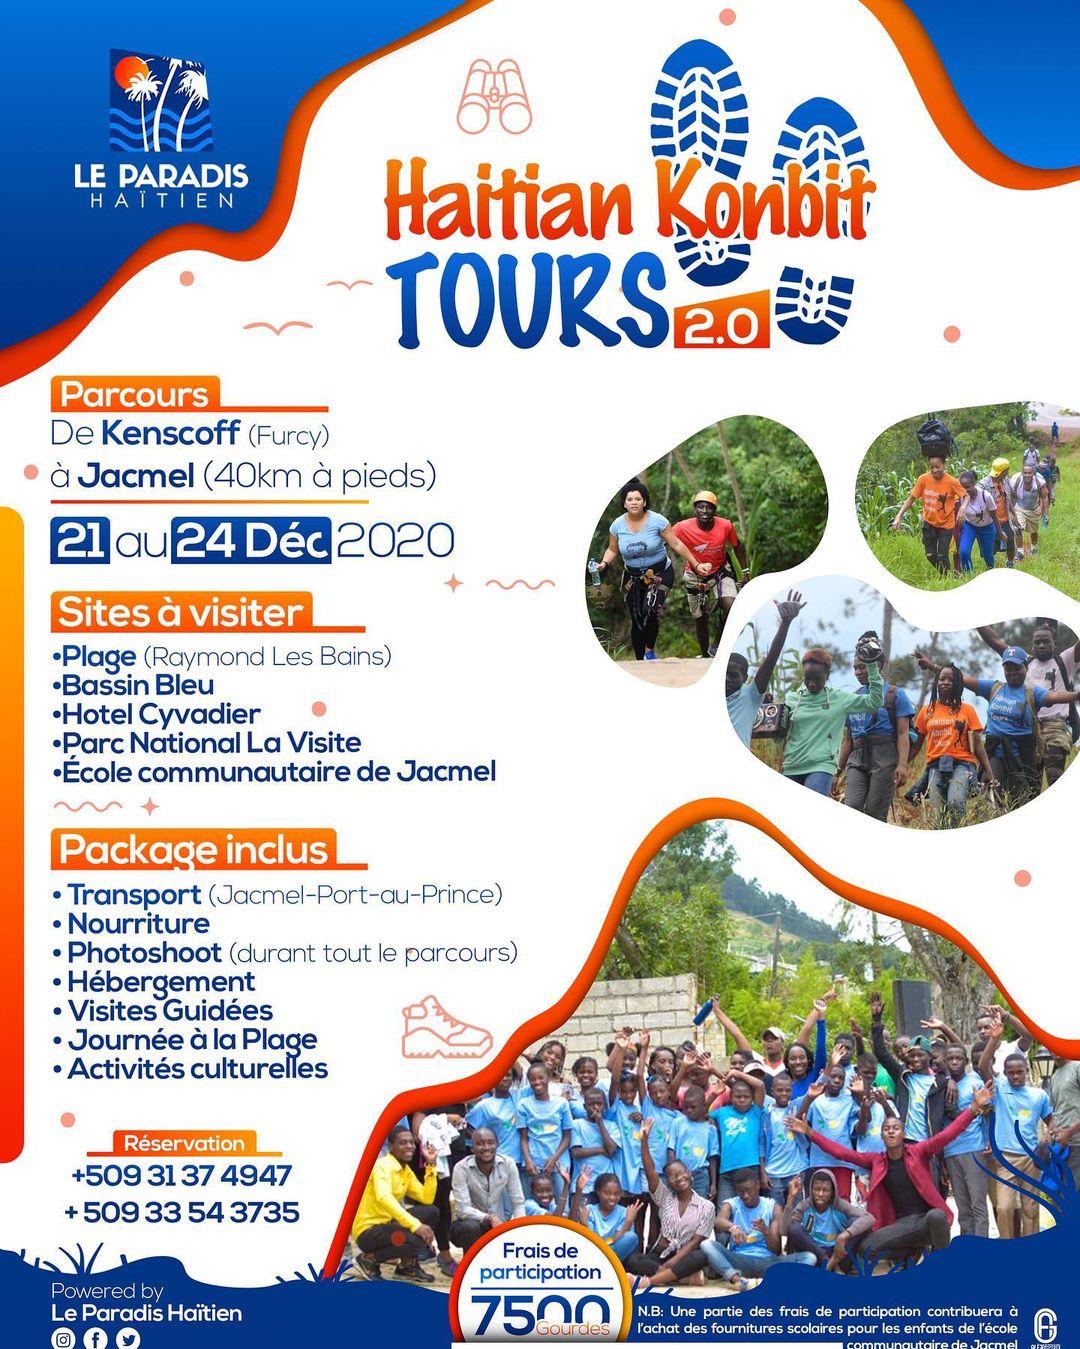 Haitien konbit tours 2.0